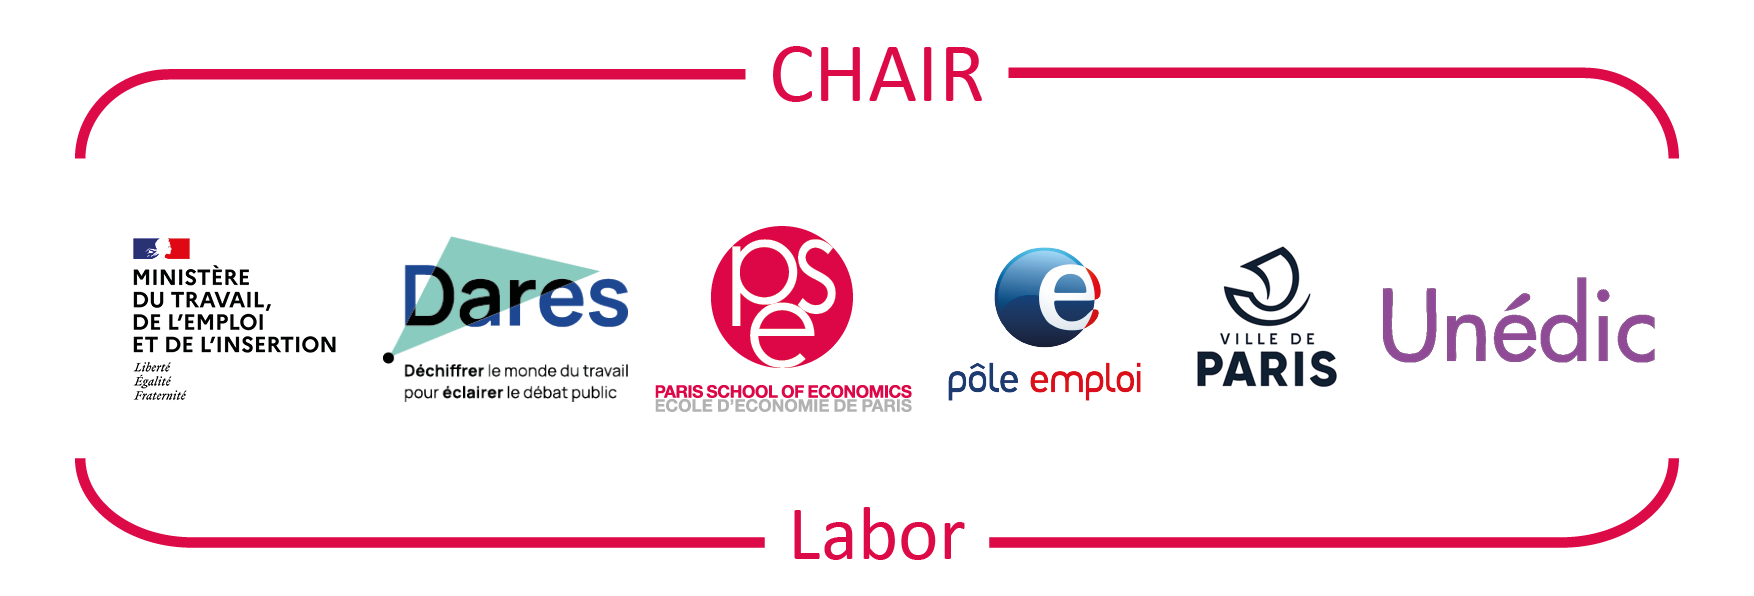 Labor Chair